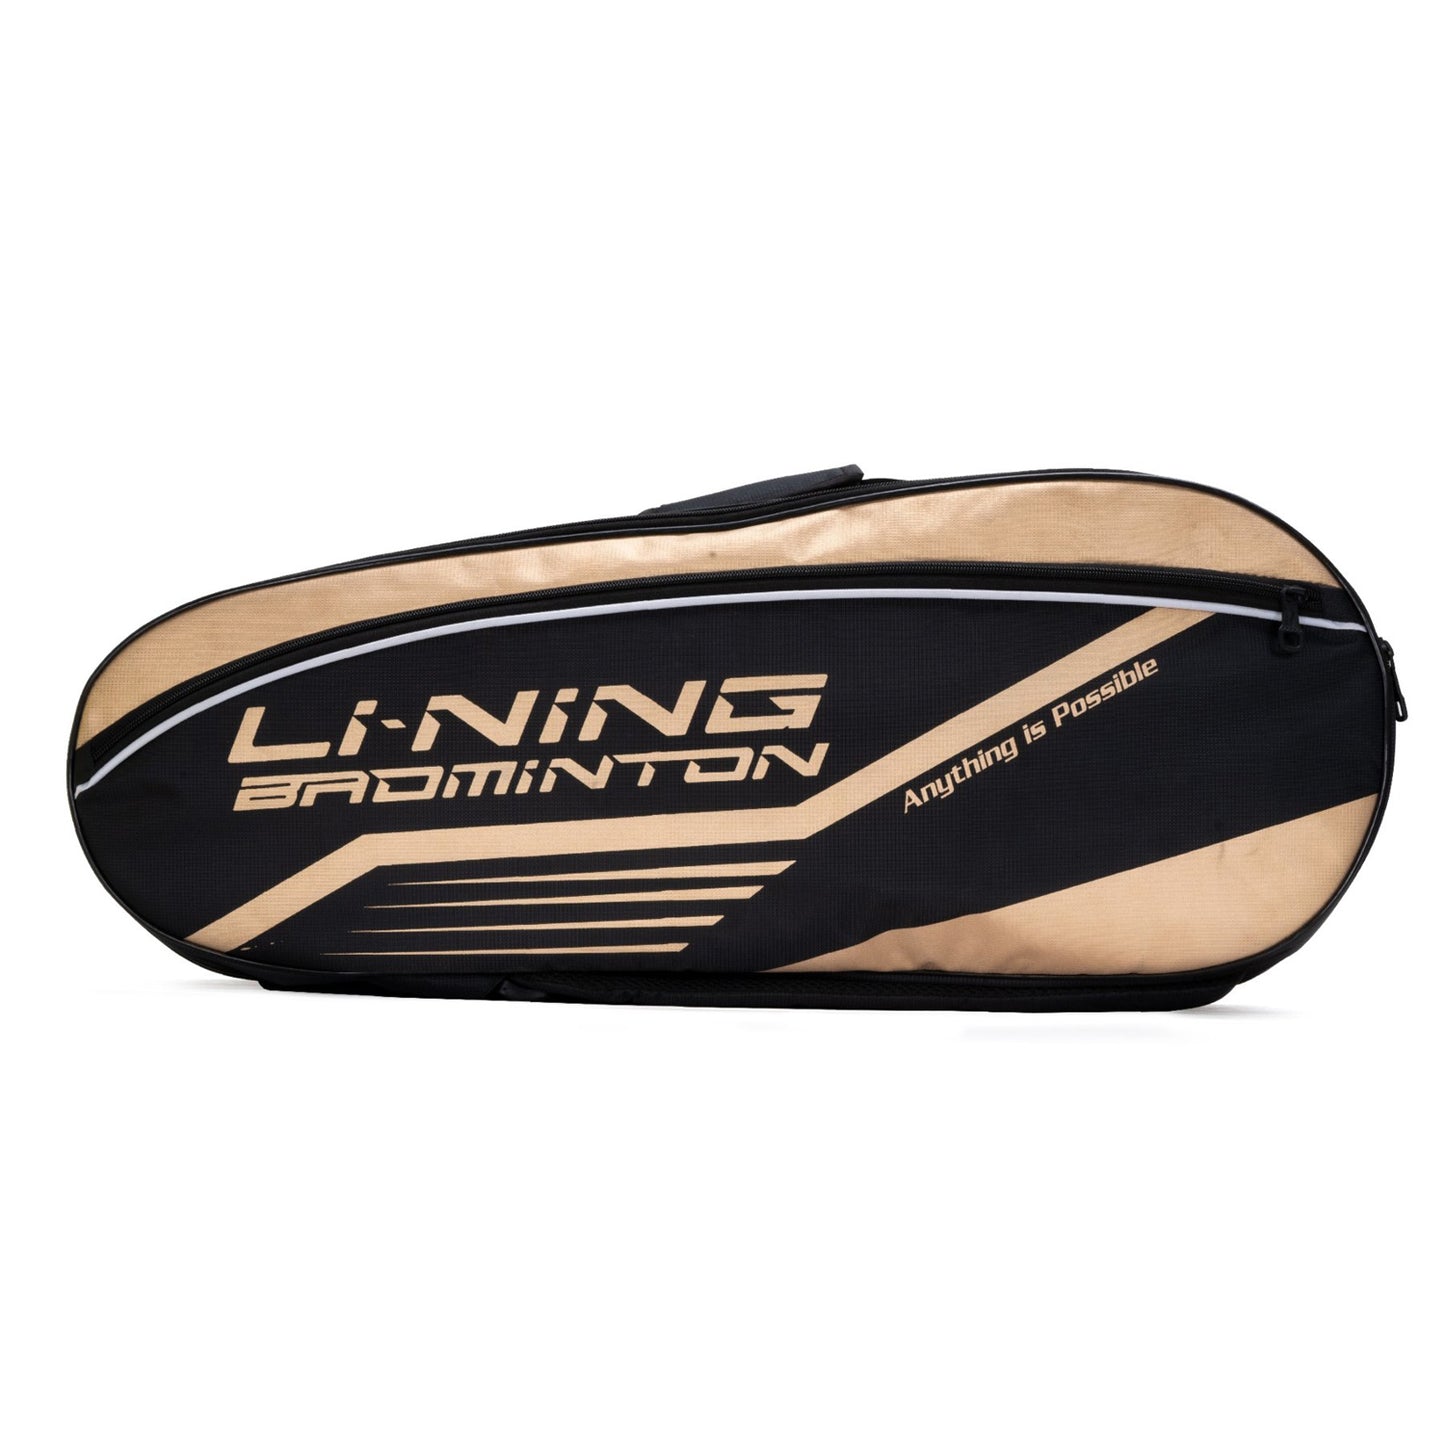 Li-Ning ABDS683 Racquet Kitbag - Best Price online Prokicksports.com